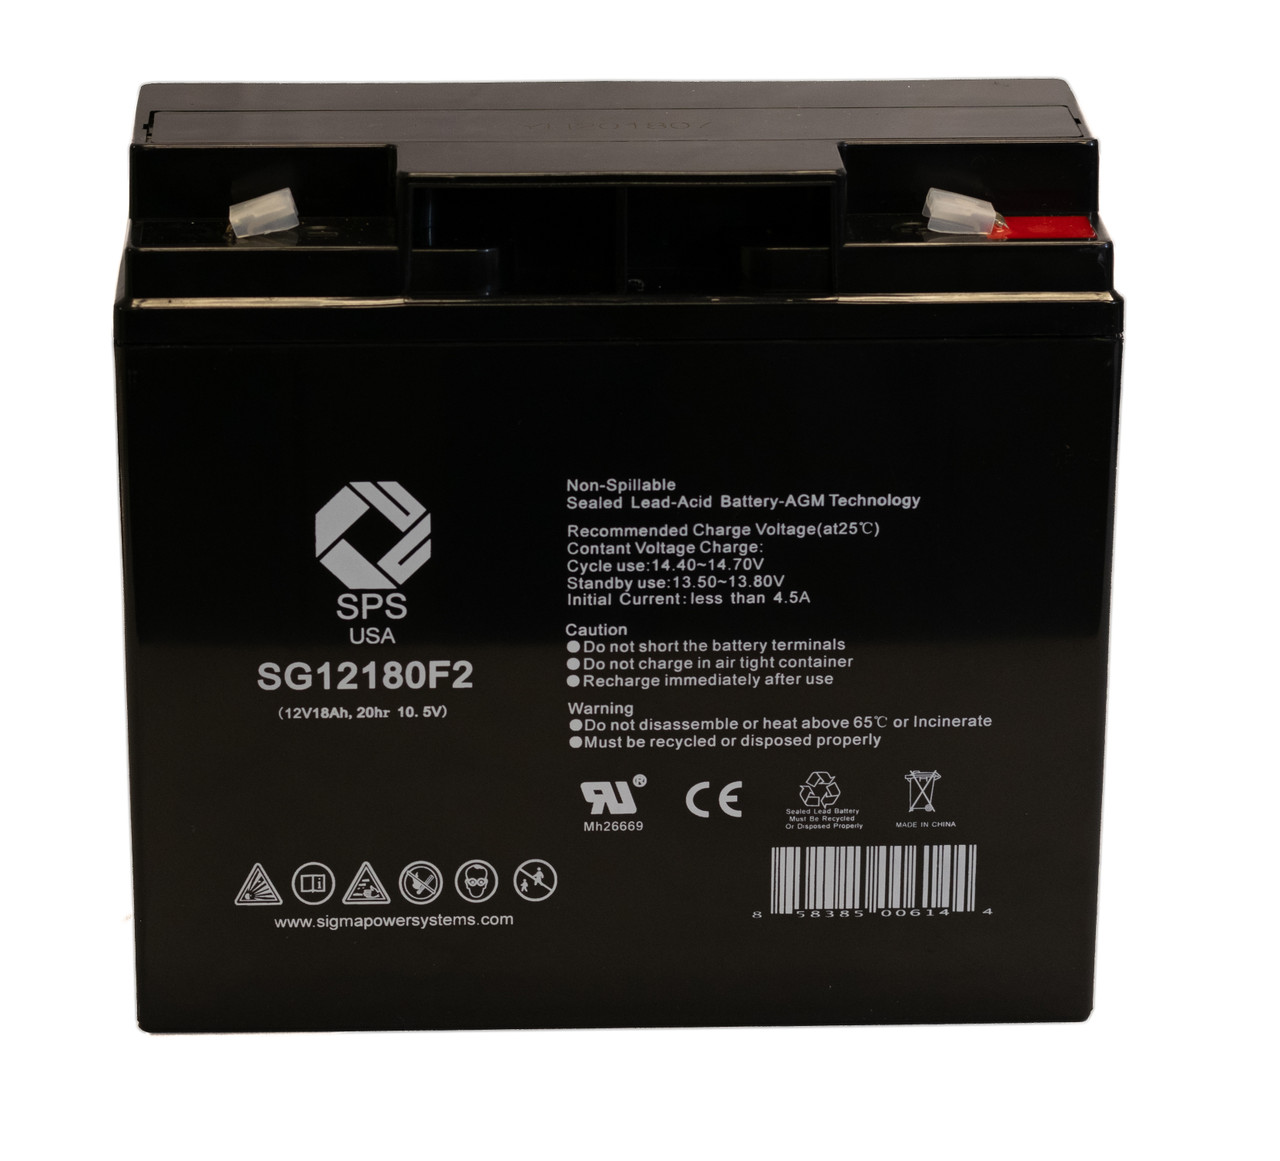 Raion Power RG12180T2 12V 18Ah Non-Spillable Battery for SigmasTek SP12-18